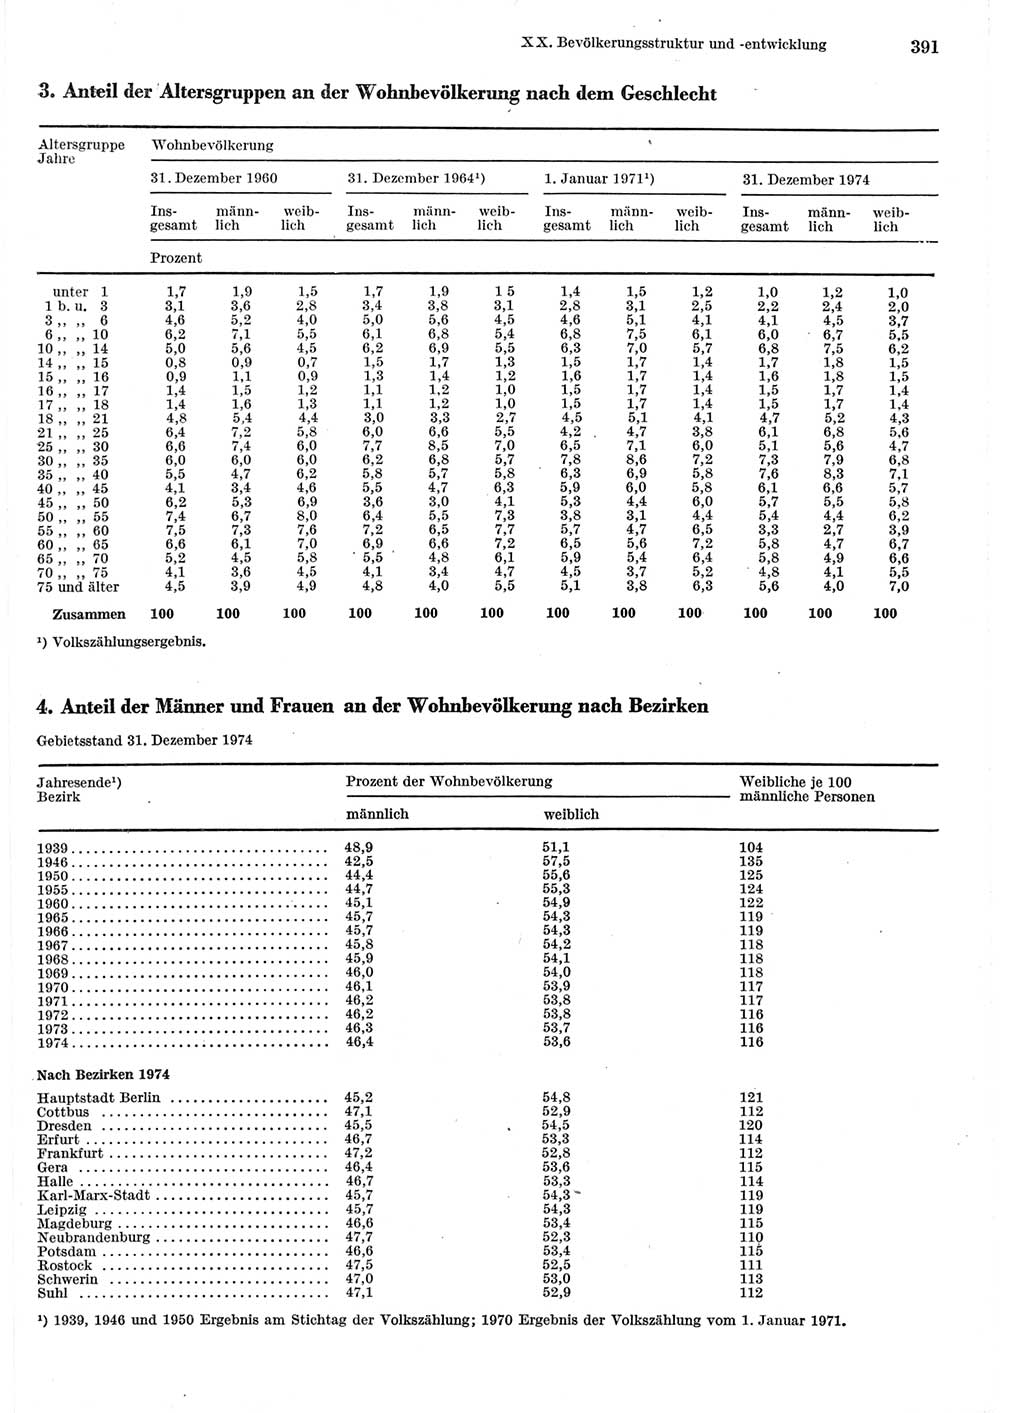 Statistisches Jahrbuch der Deutschen Demokratischen Republik (DDR) 1975, Seite 391 (Stat. Jb. DDR 1975, S. 391)